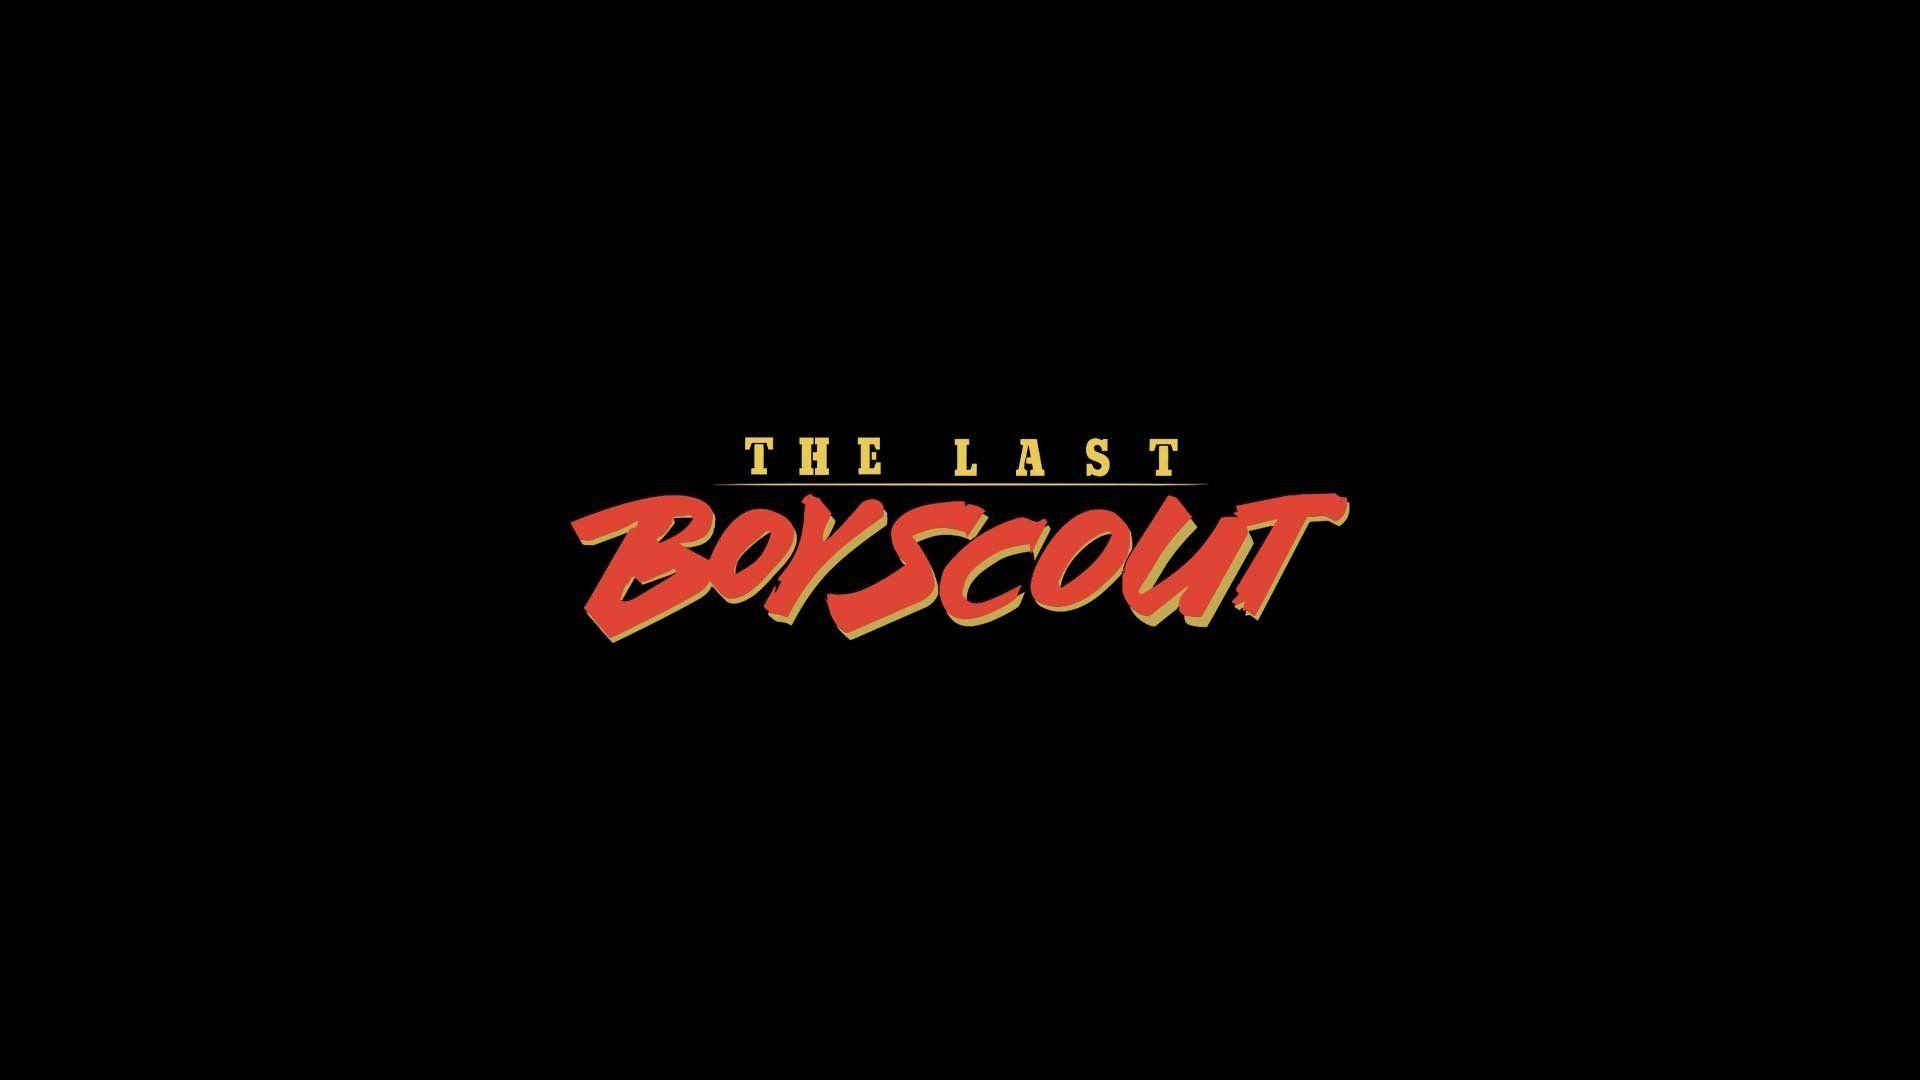 The Last Boy Scout HD Wallpaper